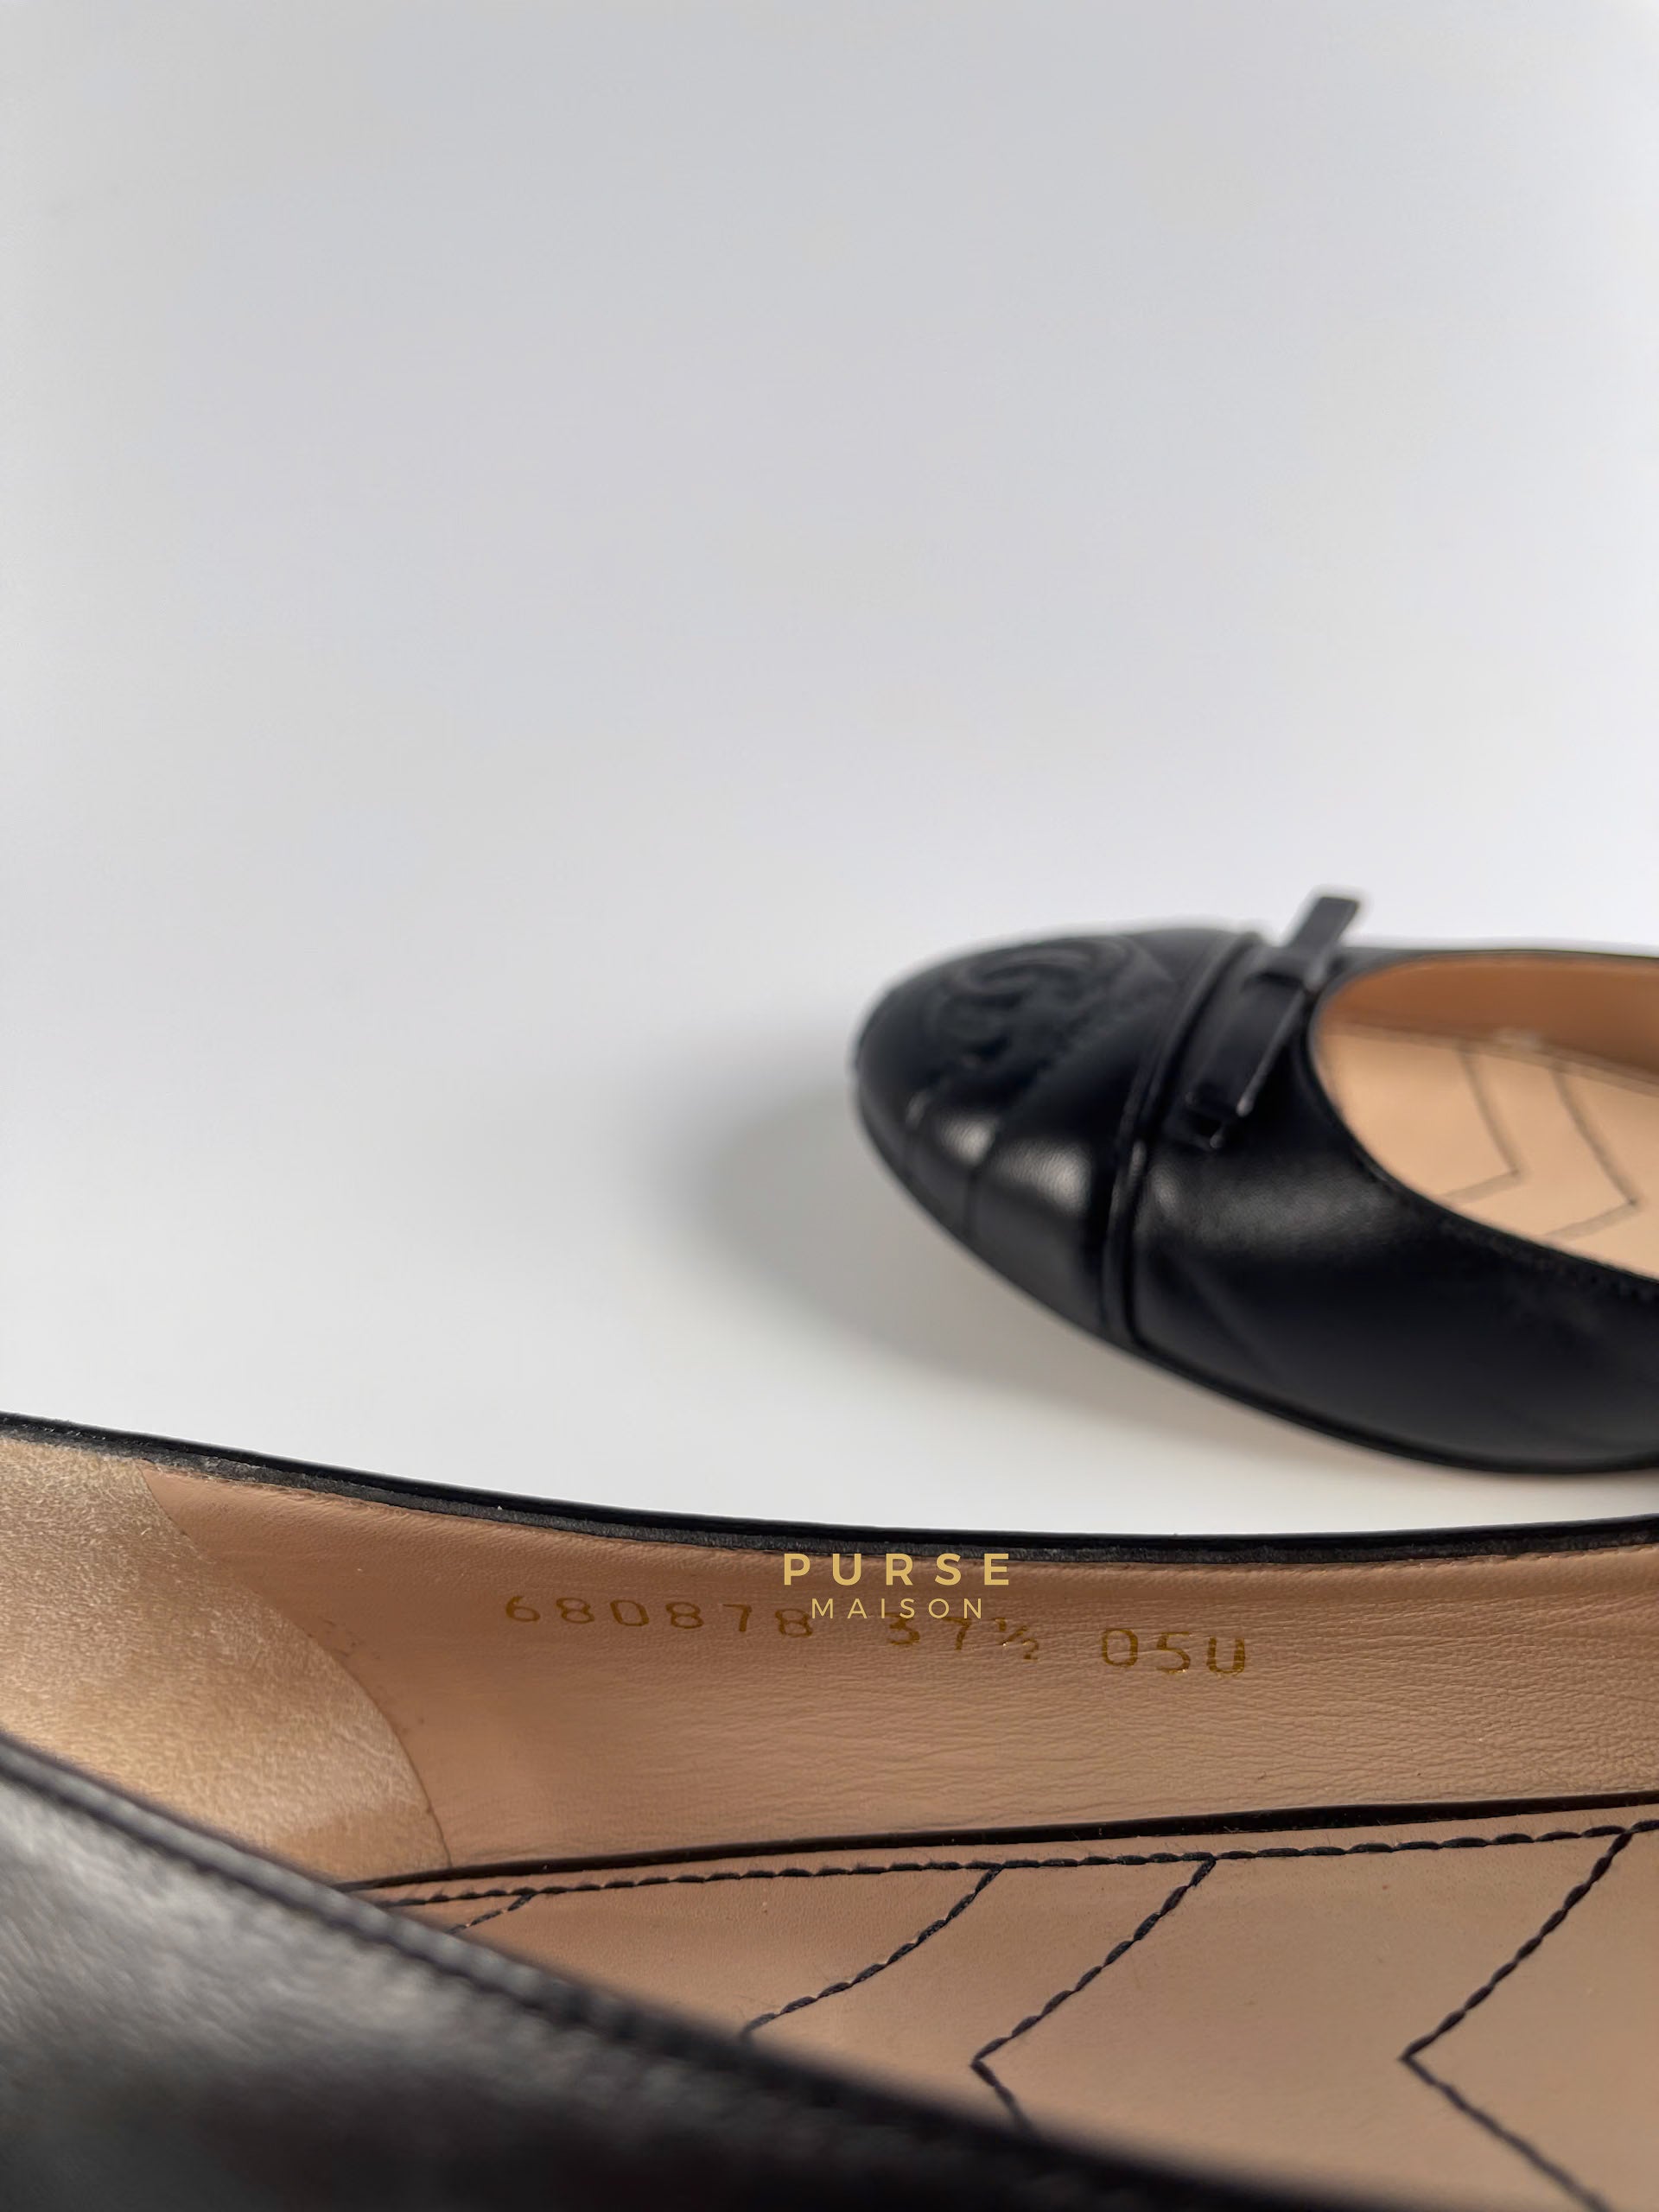 GG Black Marmont Leather Logo Ballet Shoes Size 37.5 EU, 24.5cm) | Purse Maison Luxury Bags Shop